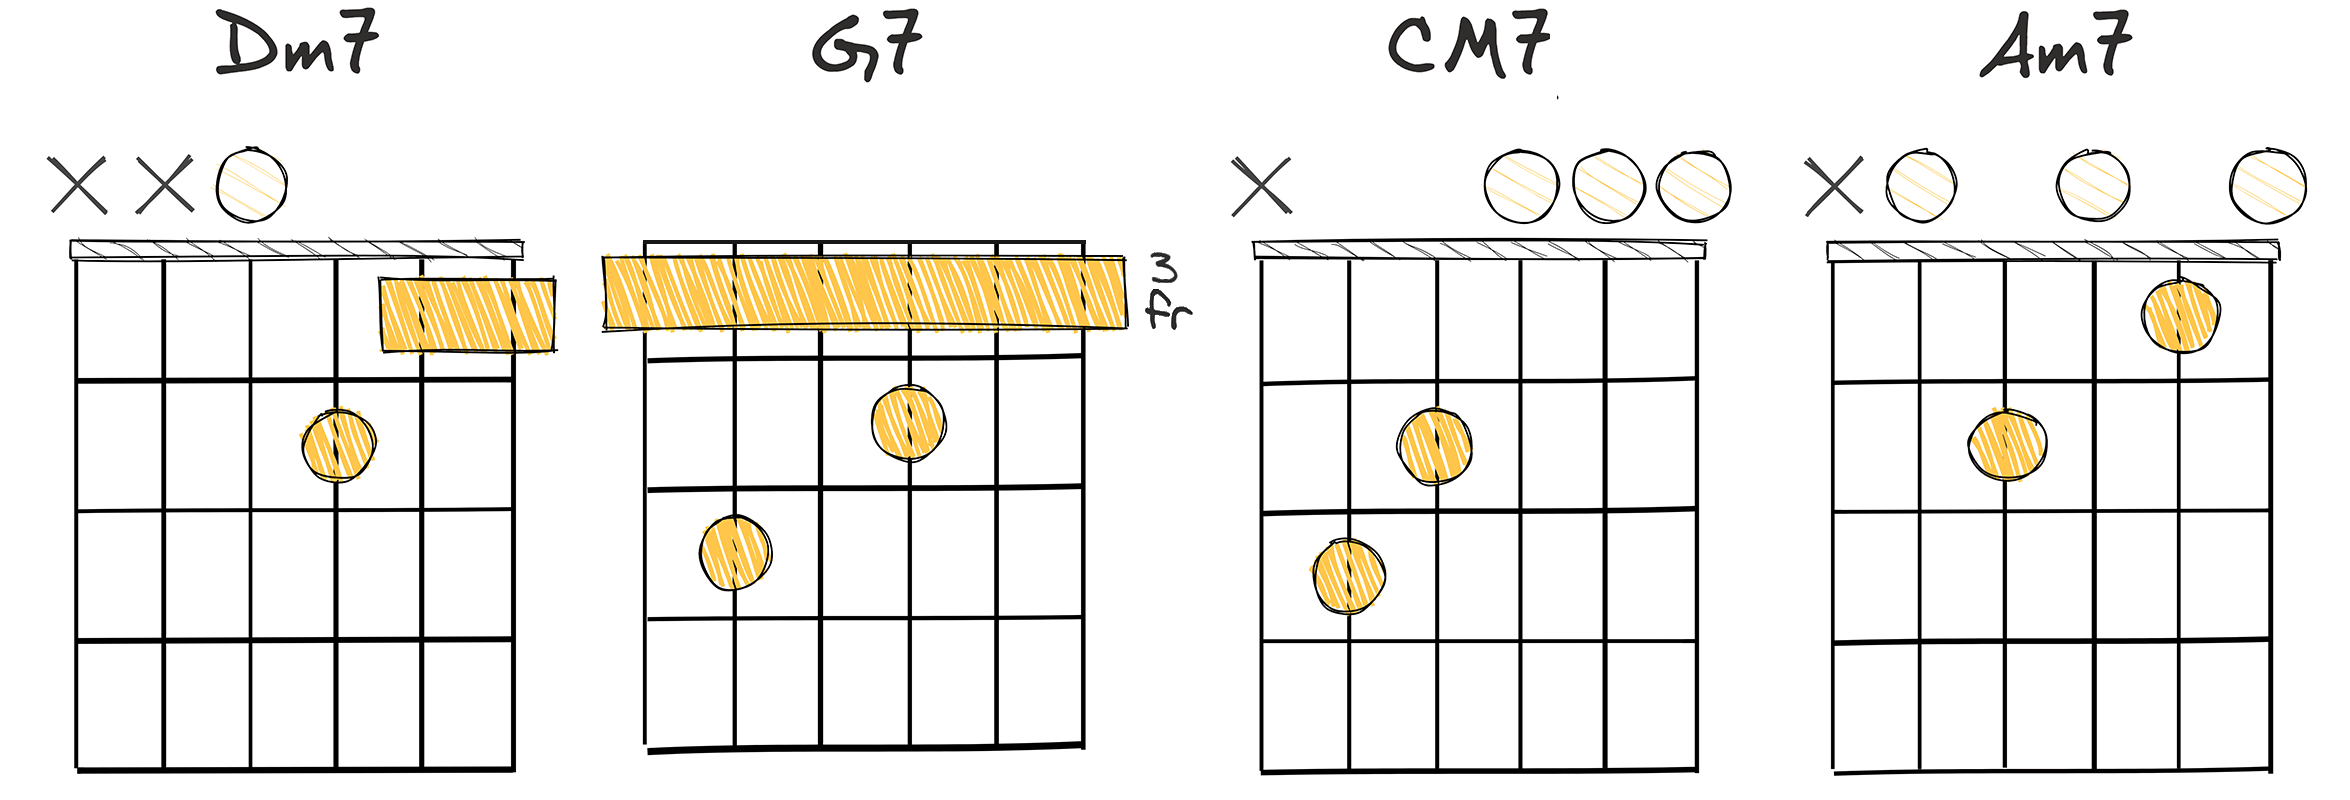 ii7 - V7 - I7 - vi7 (2-5-1-6) chords diagram